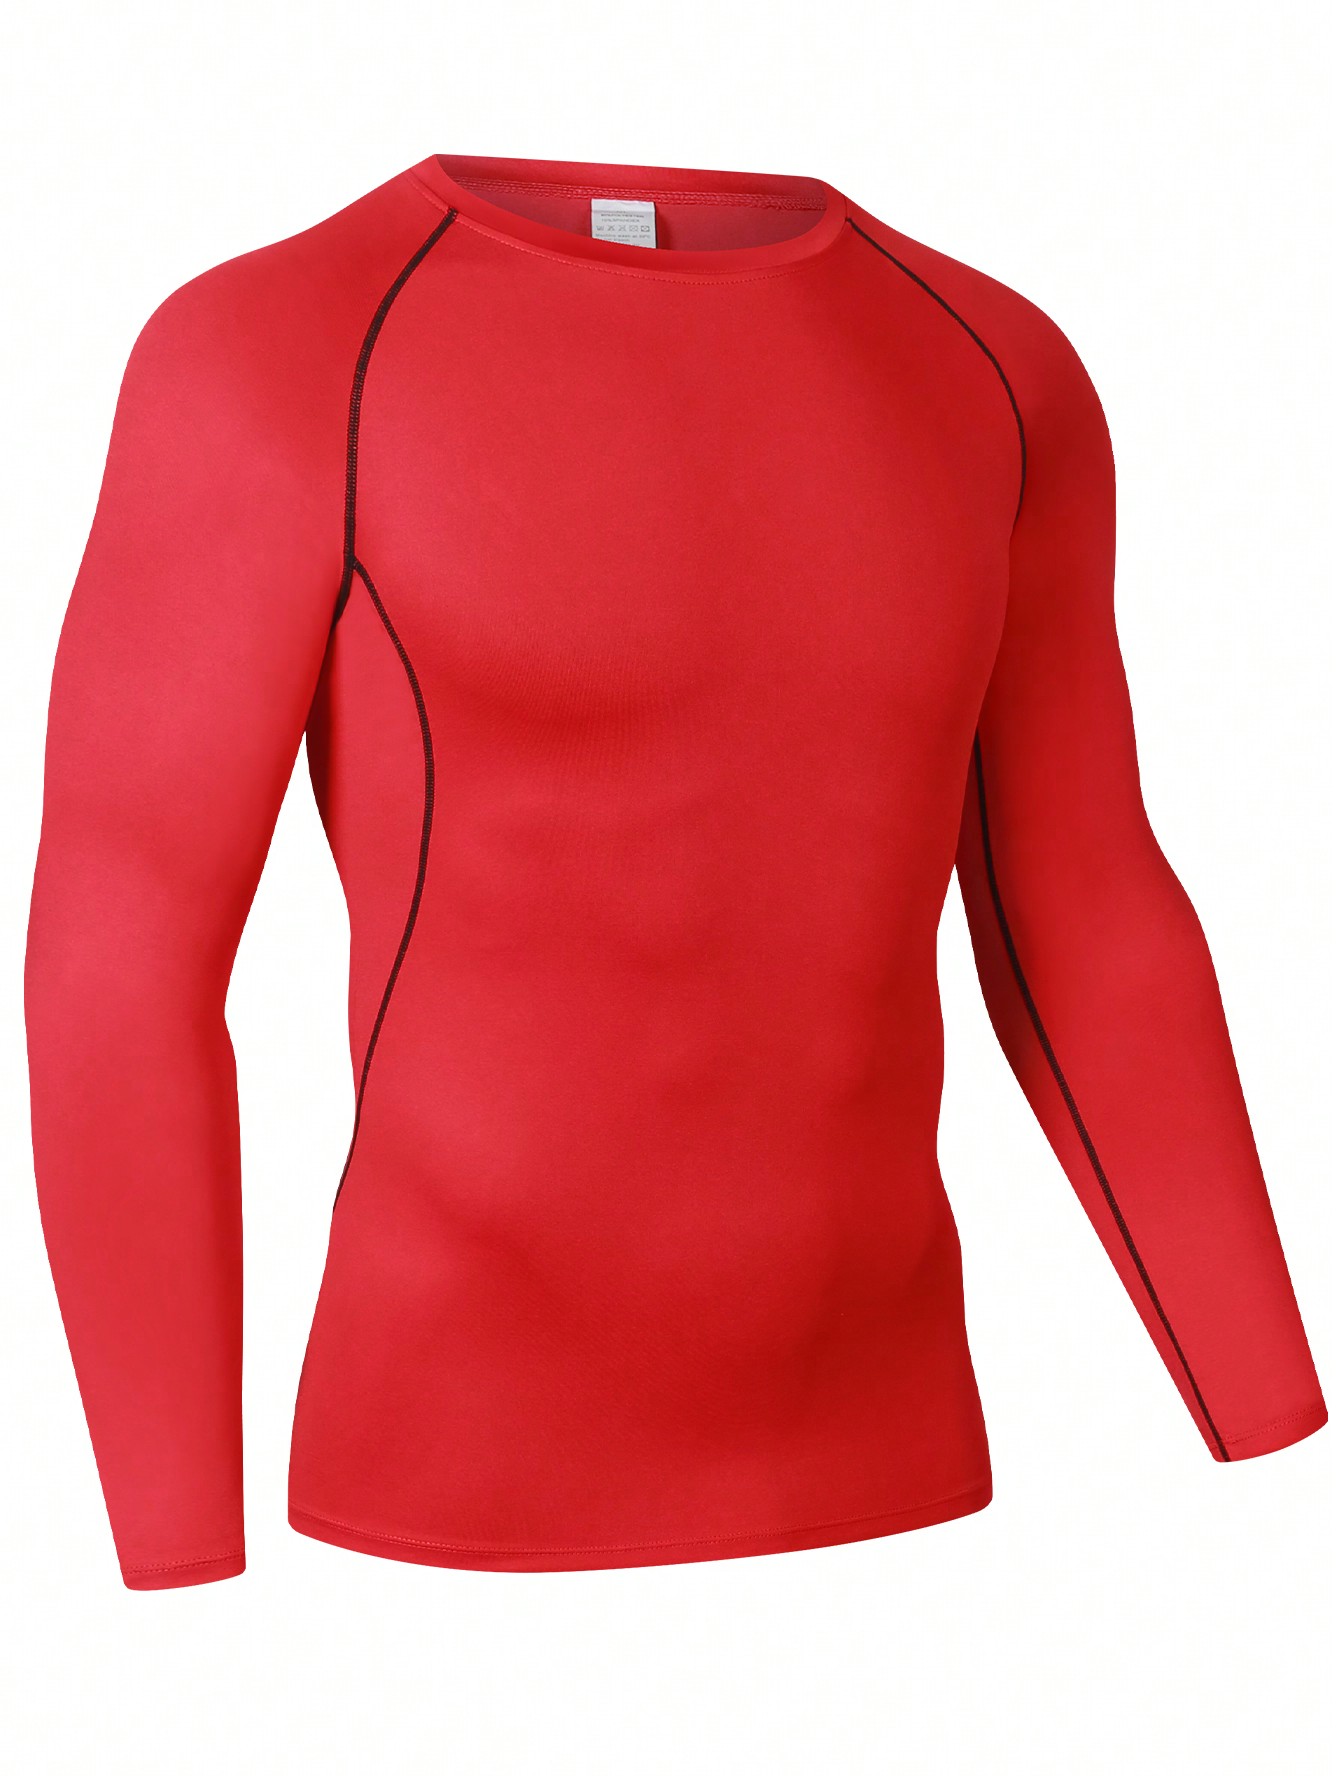 Мужская эластичная компрессионная рубашка для фитнеса с длинными рукавами, красный многоцветная быстросохнущая спортивная футболка с коротким рукавом для фитнеса тренировочная футболка для бега дышащая спортивная одежд